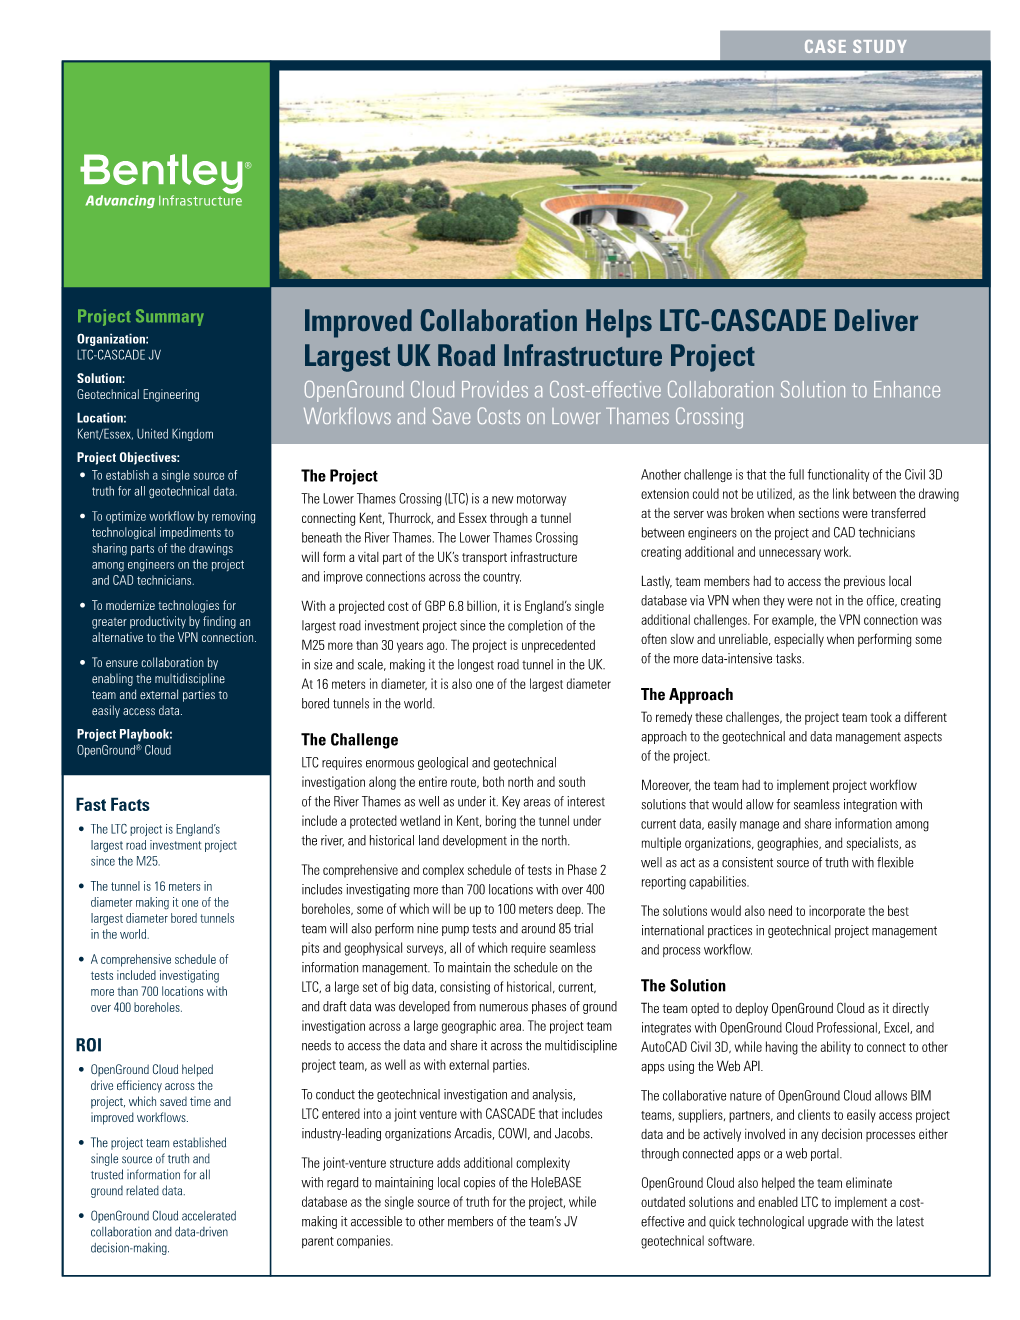 Improved Collaboration Helps LTC-CASCADE Deliver Largest UK